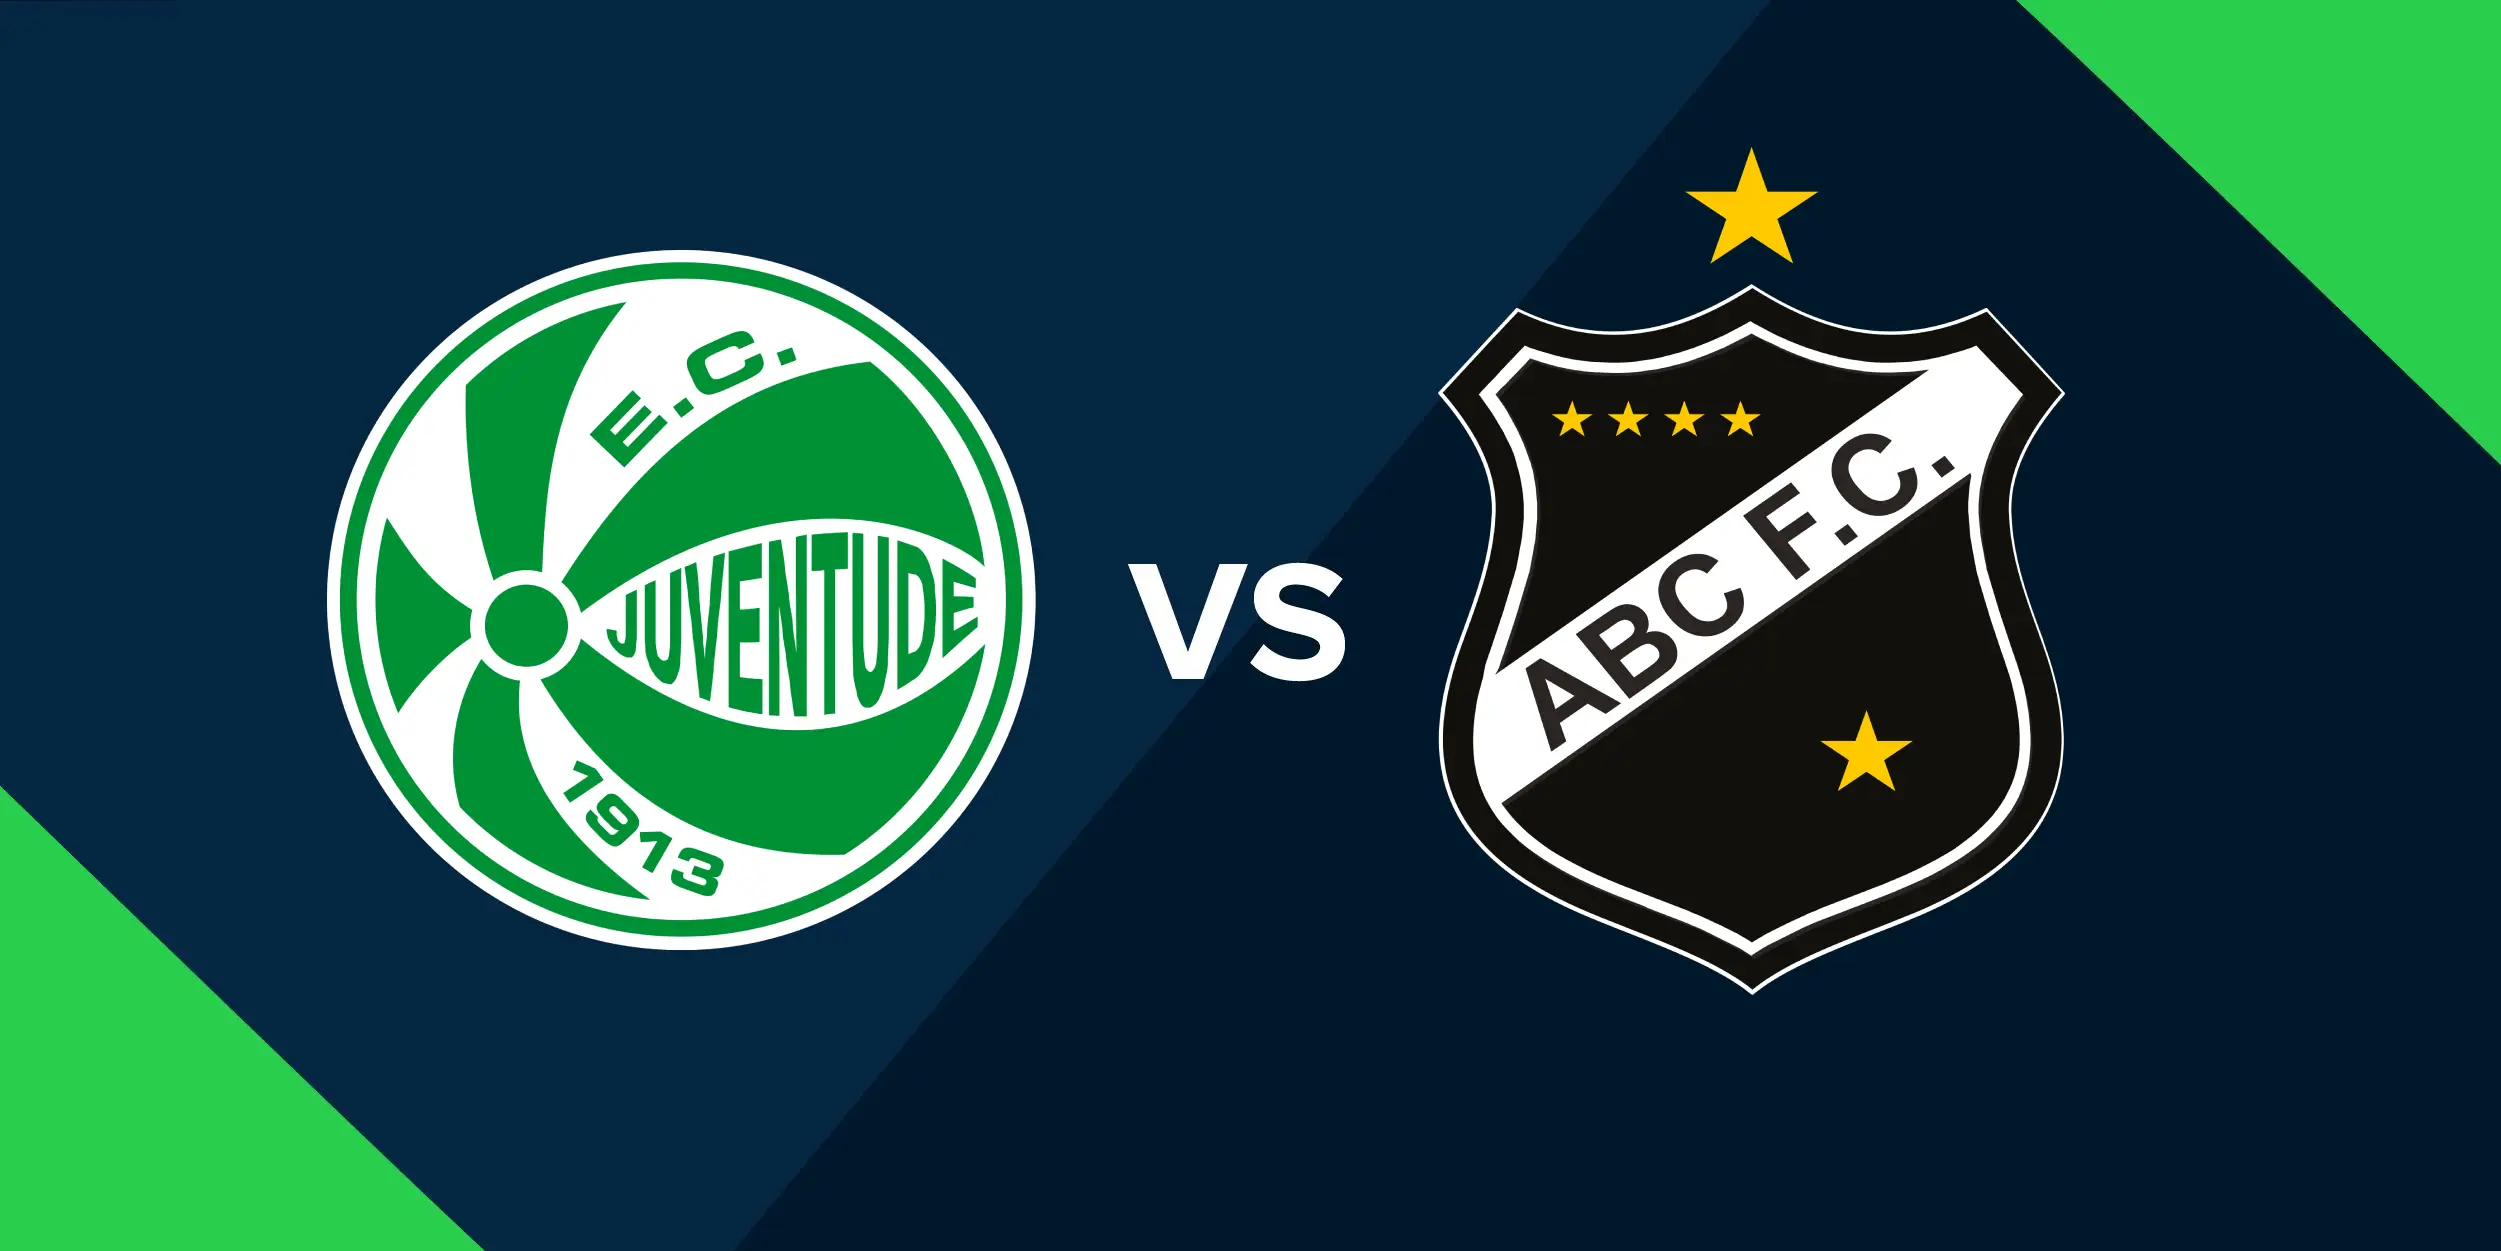 Nhận định bóng đá ABC vs Juventude ngày 15/11